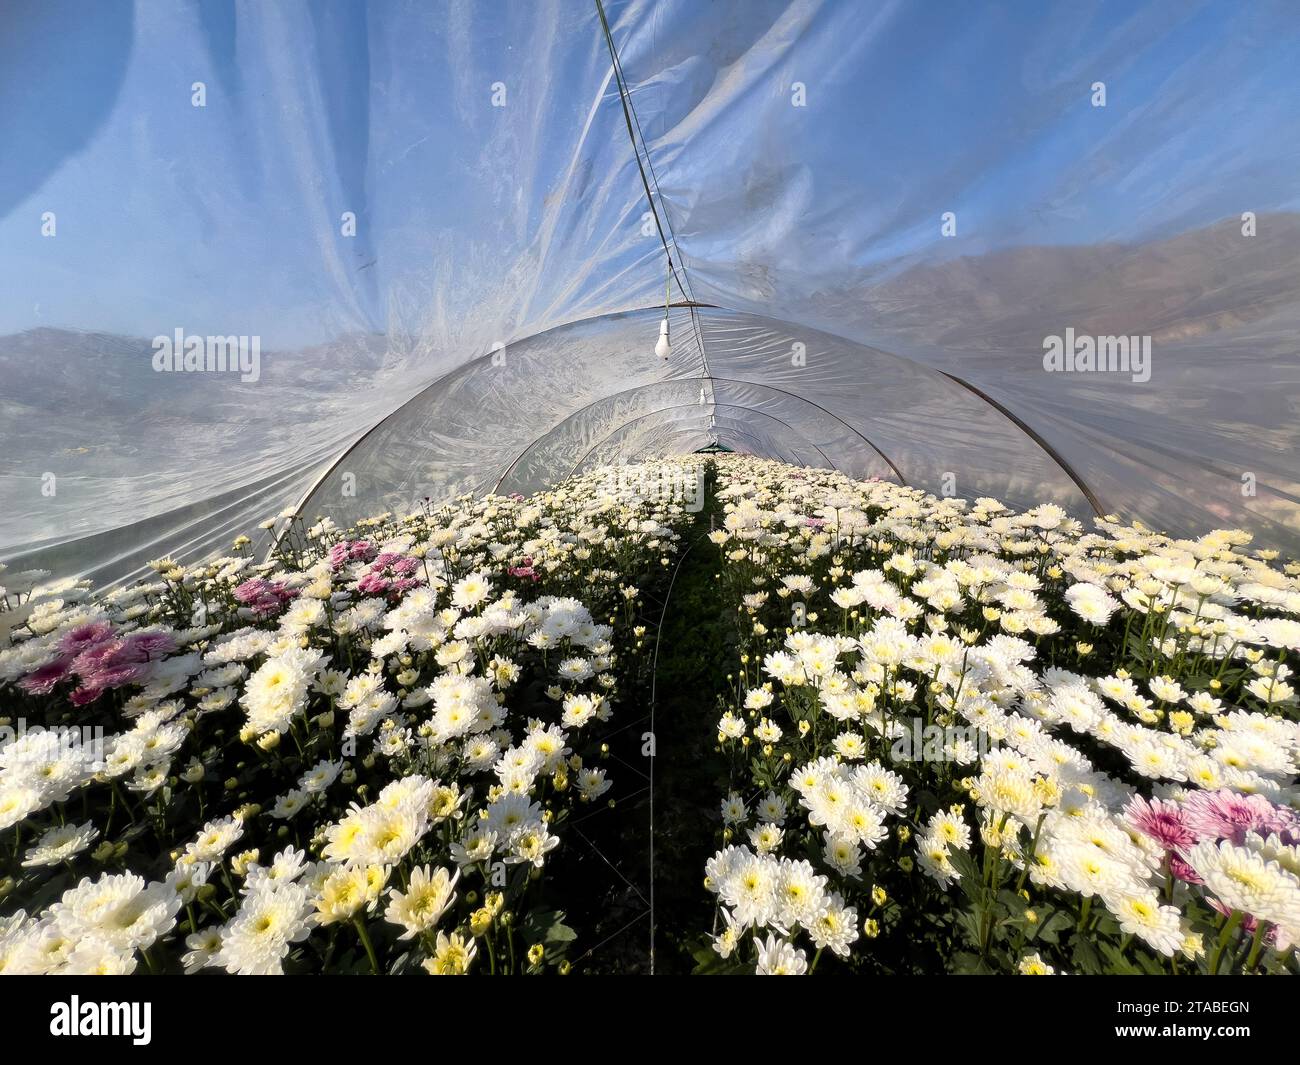 Les chrysanthèmes à usage commercial poussent dans la serre Banque D'Images